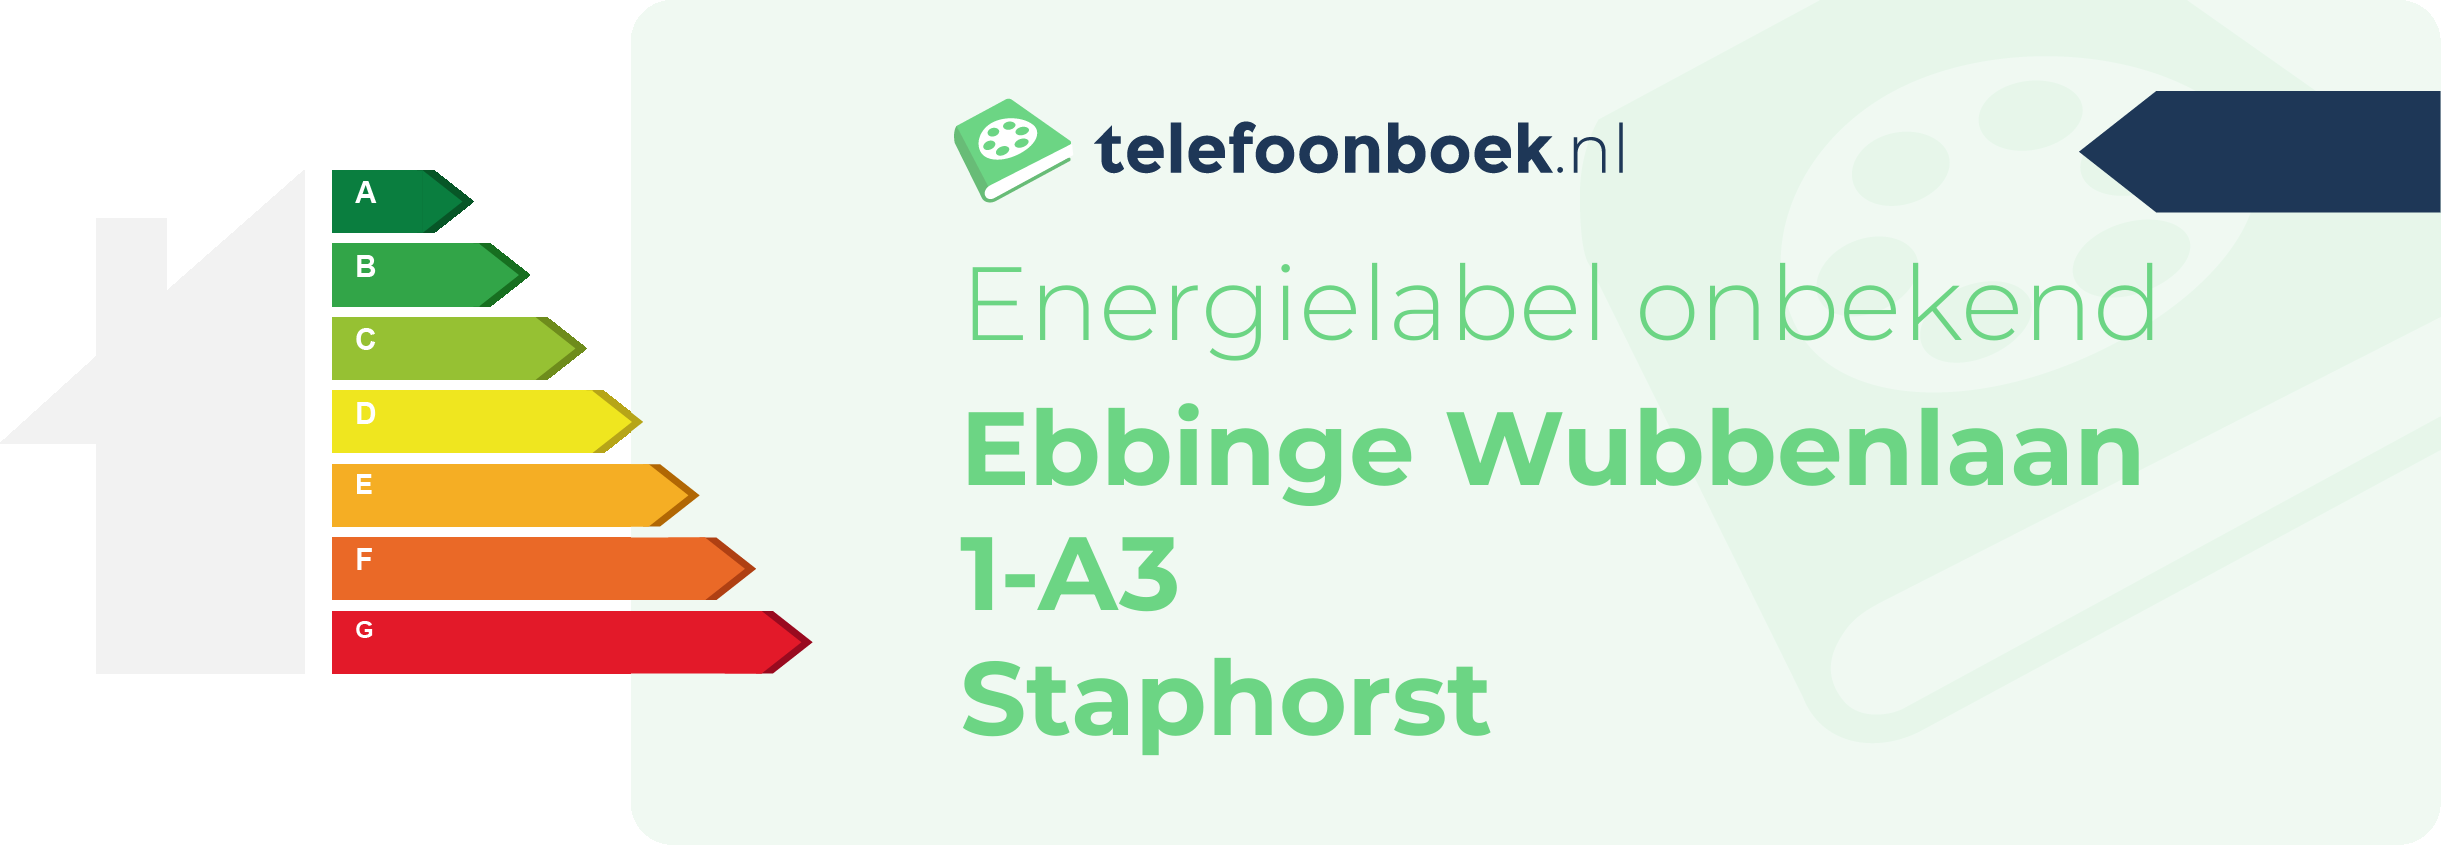 Energielabel Ebbinge Wubbenlaan 1-A3 Staphorst